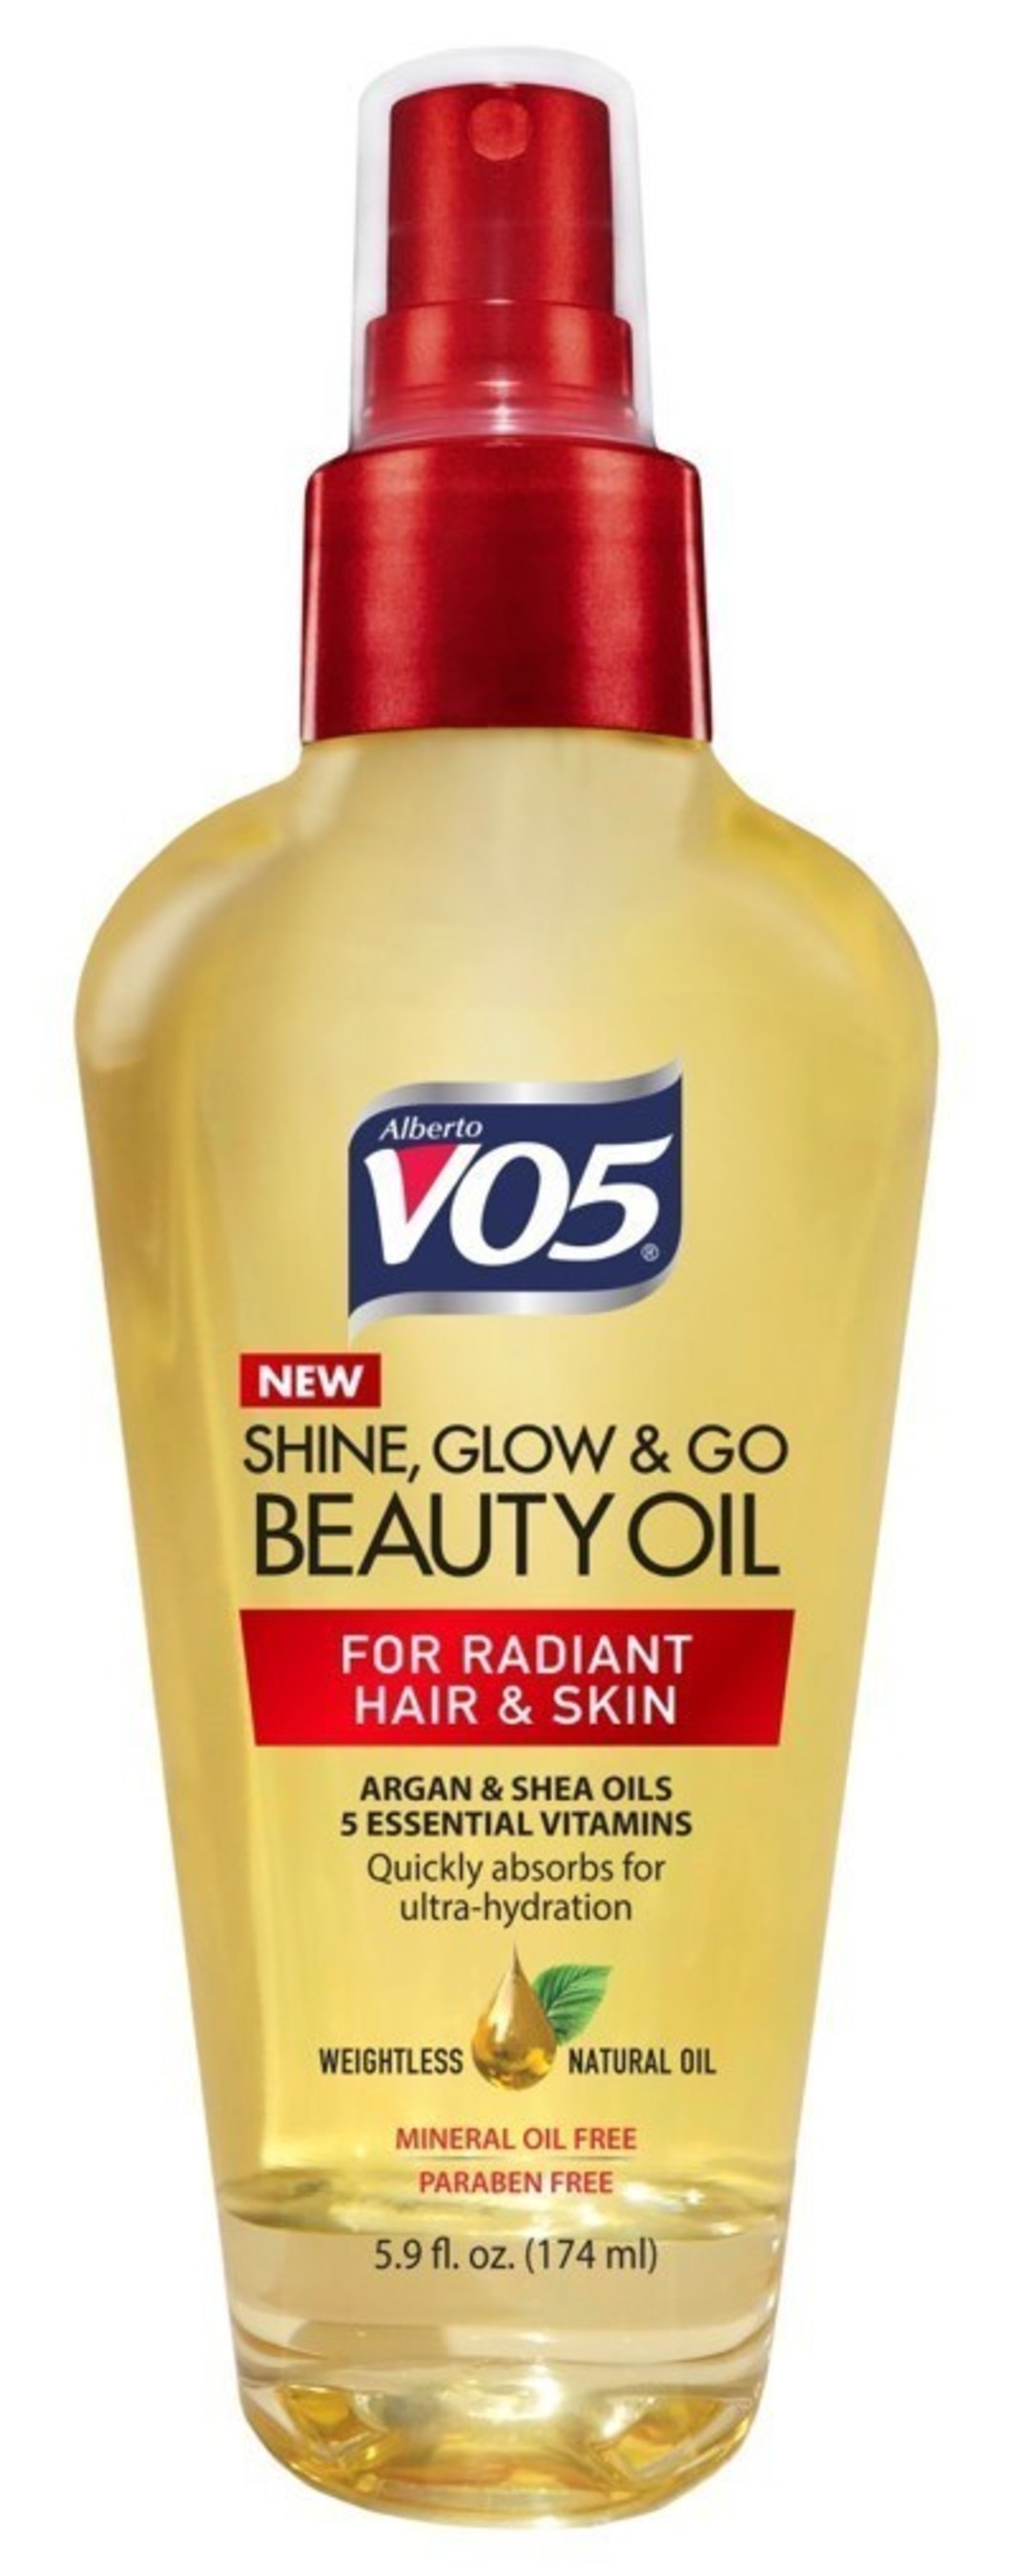 VO5 Shine, Glow & Go Beauty Oil